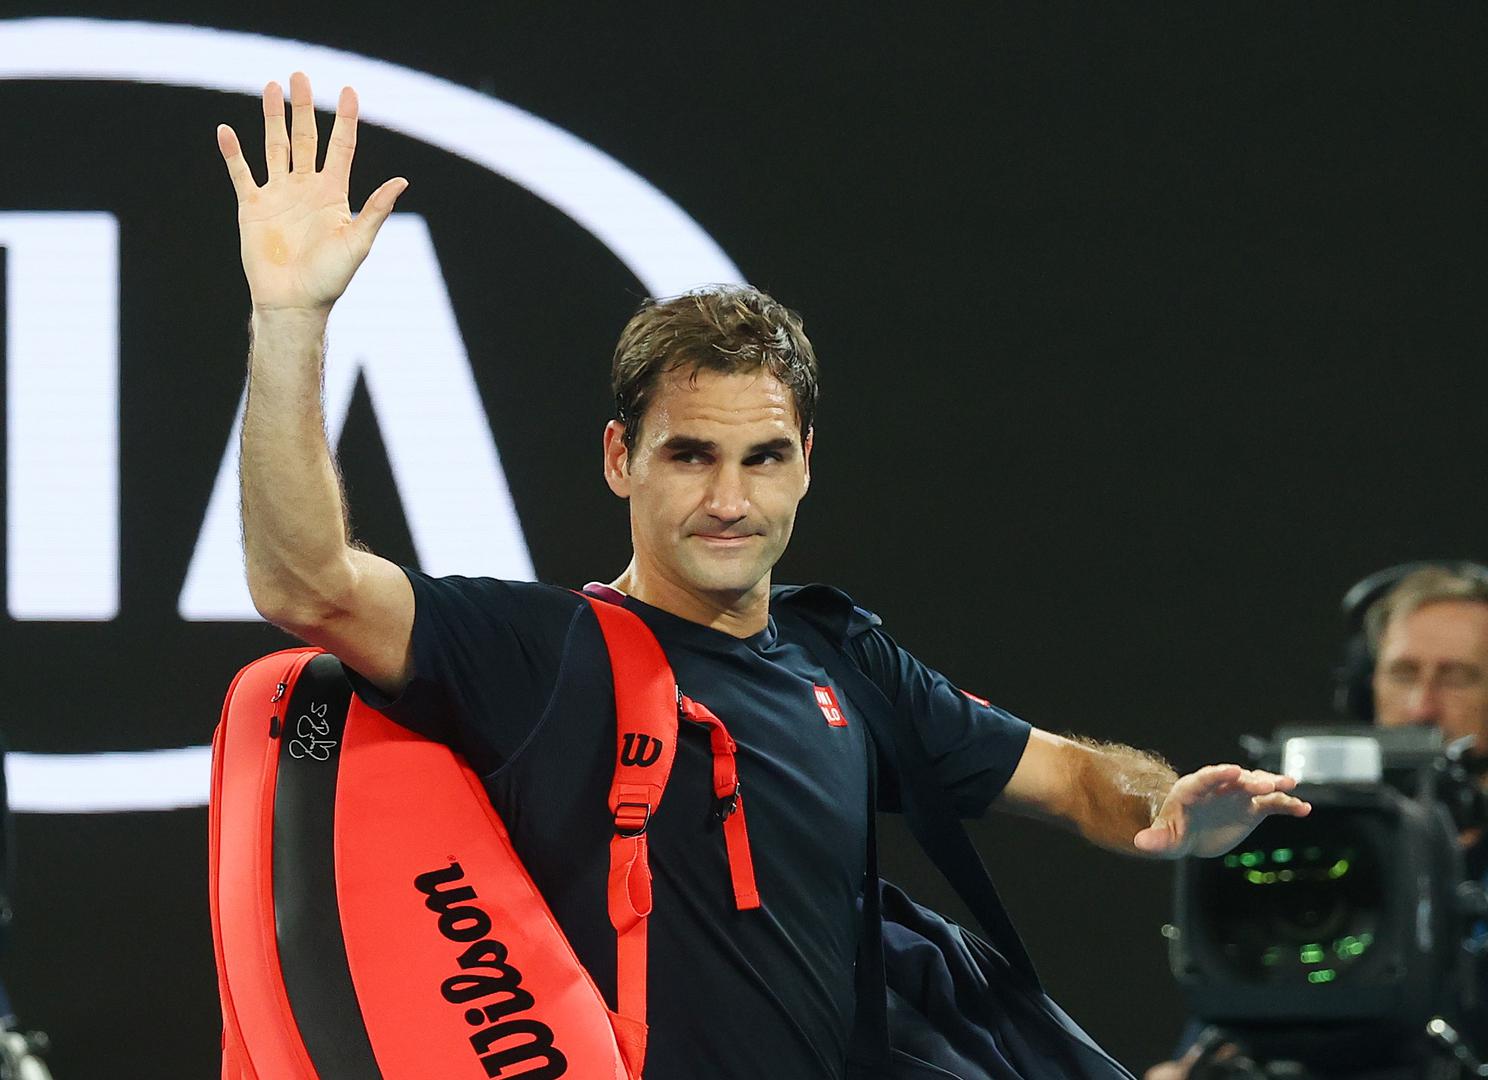 – Svaka čast Rogeru što je izašao na teren i borio se, jer se vidjelo da ima problema s kretanjem – izjavio je srpski tenisač